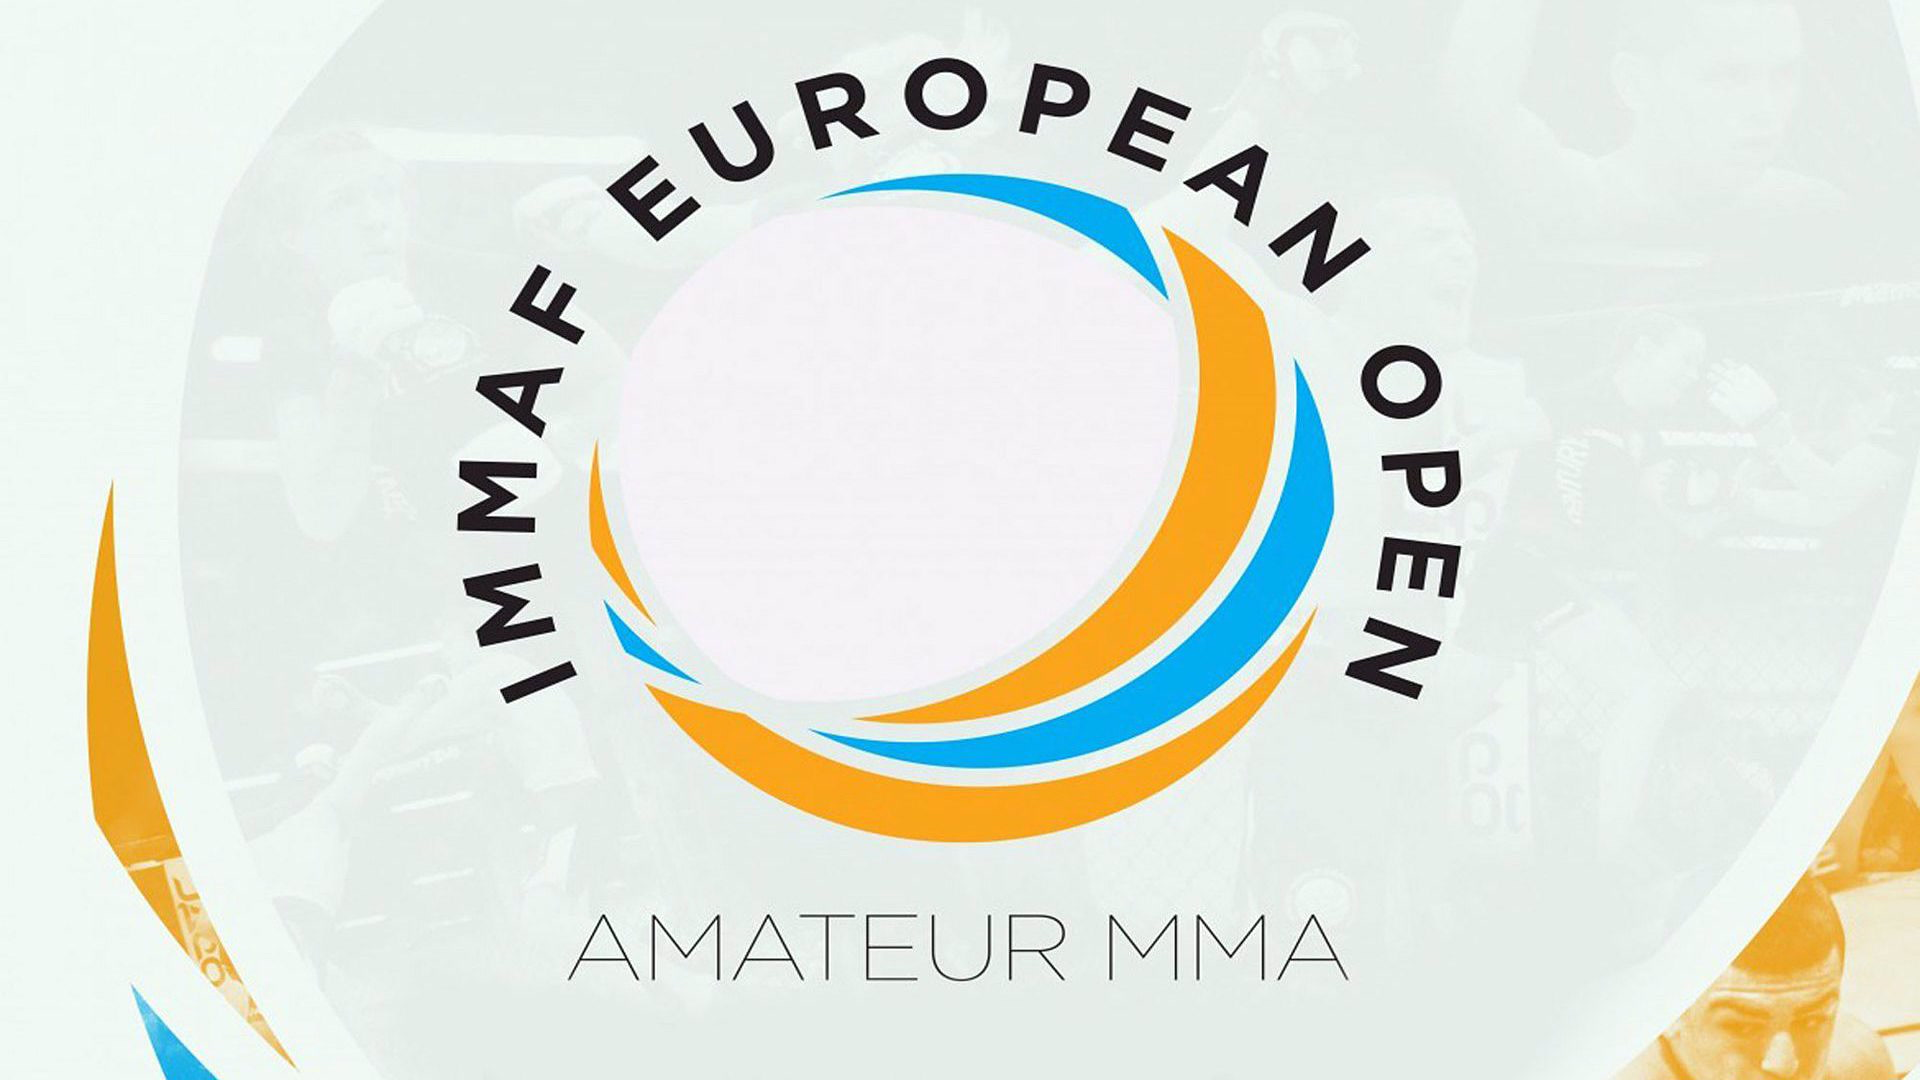 IMMAF European Open 3